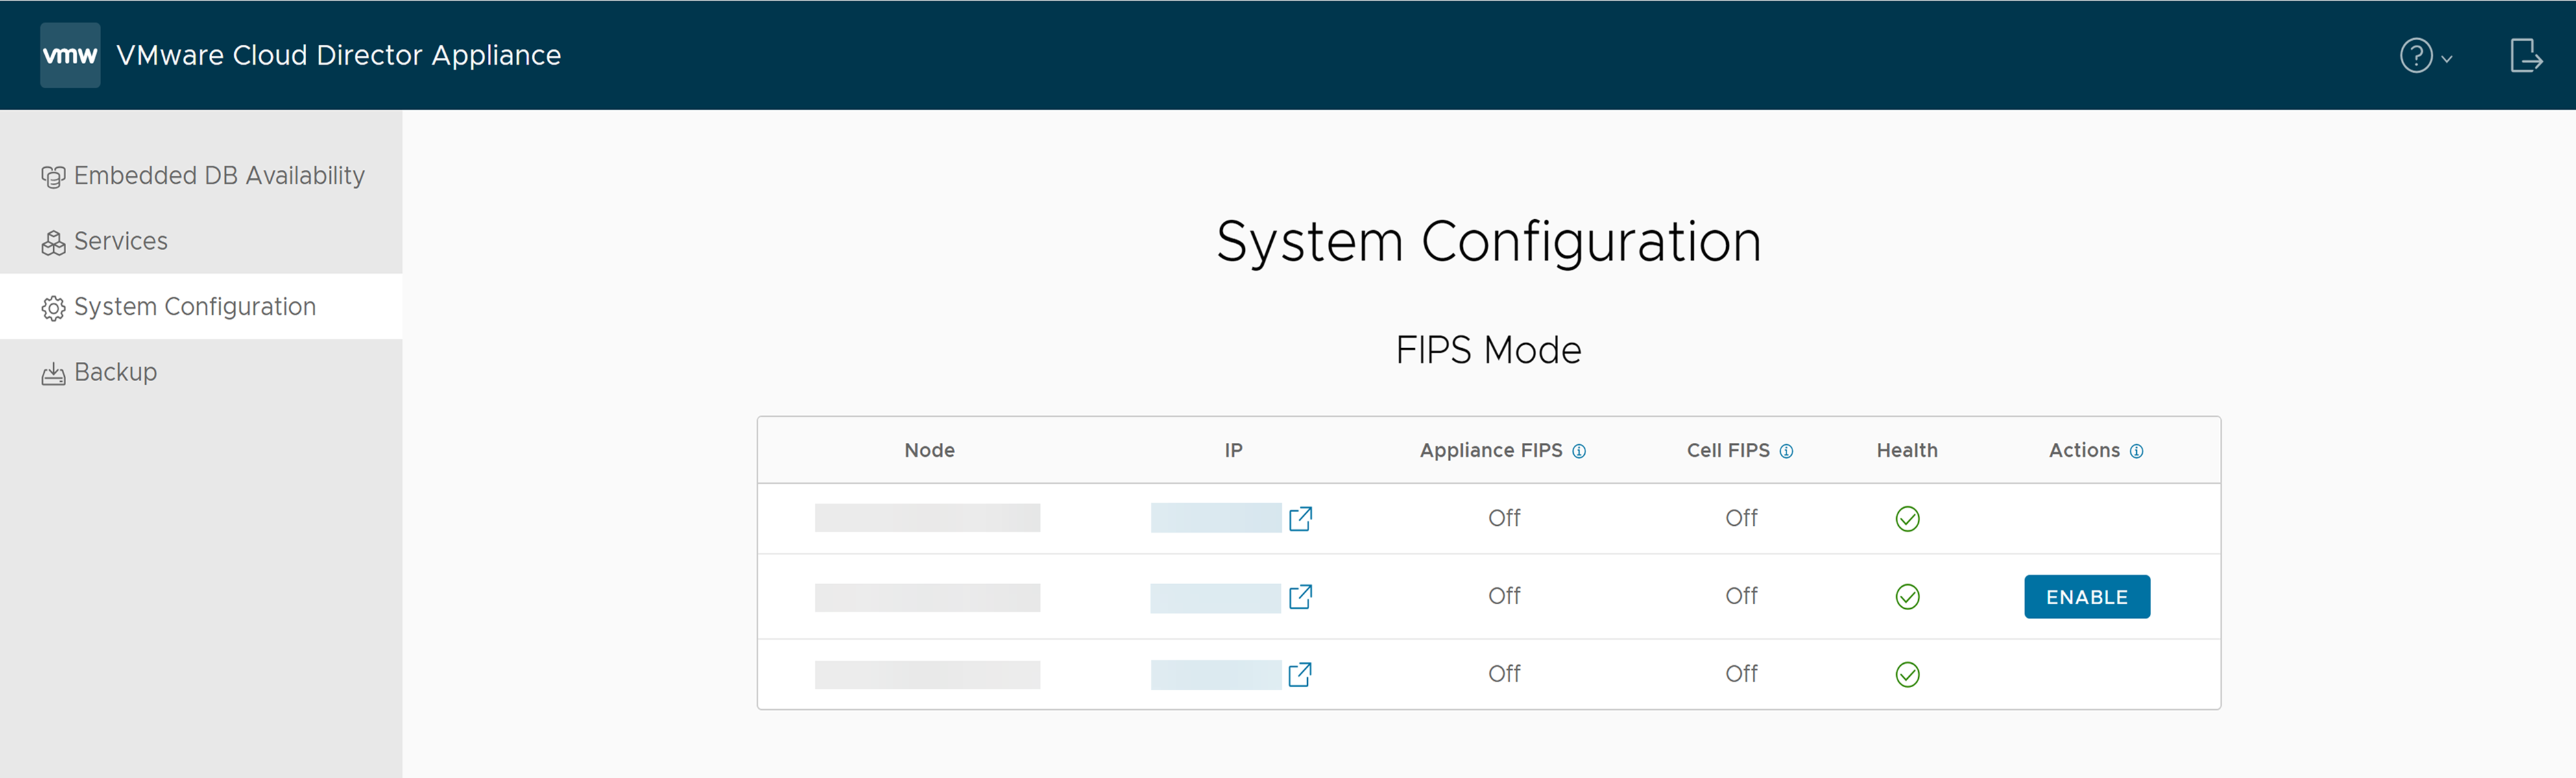 En la pestaña Configuración del sistema de la interfaz de usuario de administración de dispositivos de VMware Cloud Director, encontrará la información del modo FIPS.